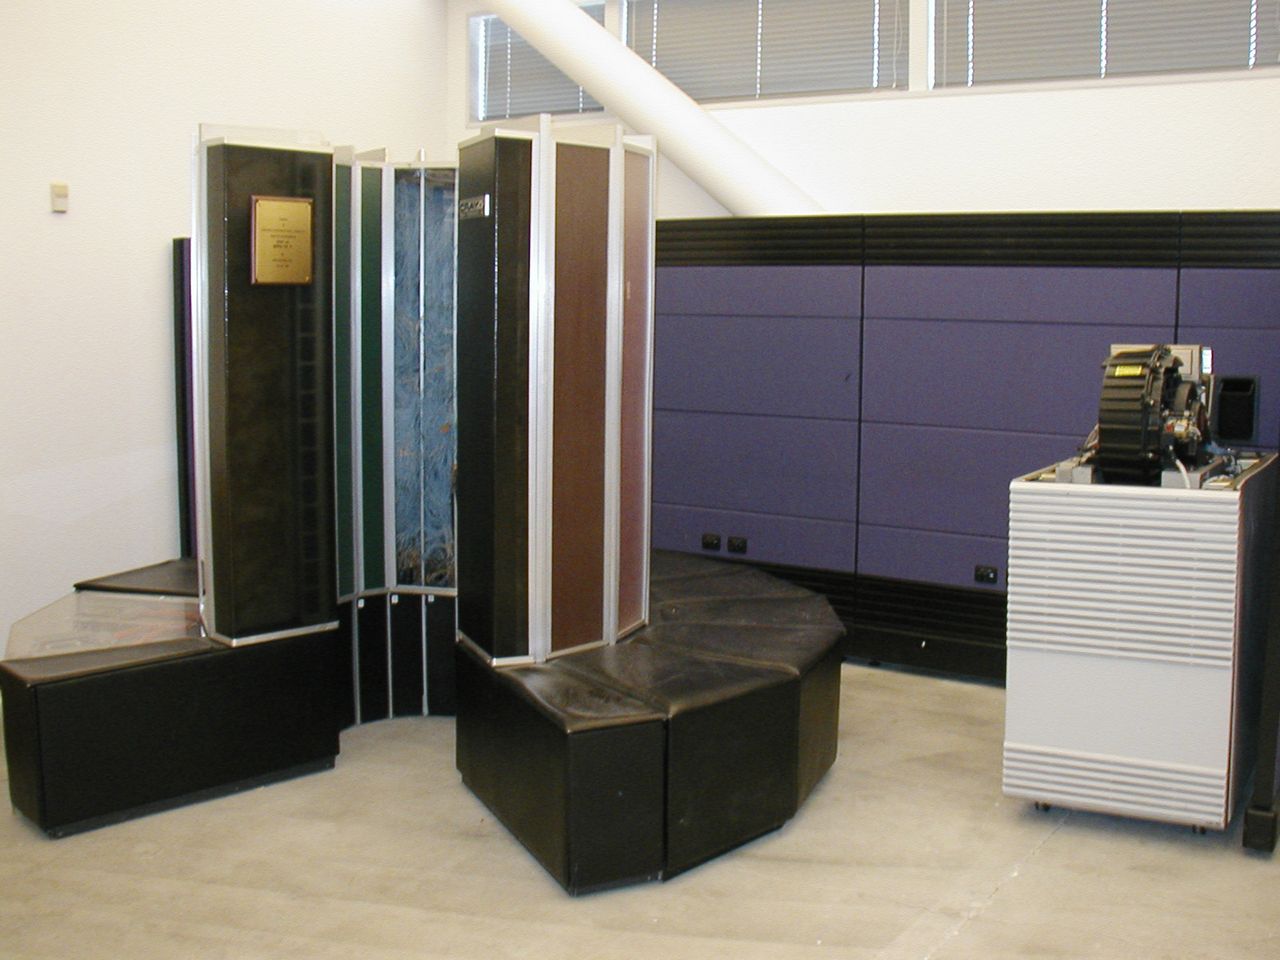 Cray 1 (to ta kabina z siedziskami) był superkomputerem końca lat 70-tych. Jego moc obliczeniowa 133 MFLOPS wówczas równie imponująca jak jego cena - 8 mln USD.